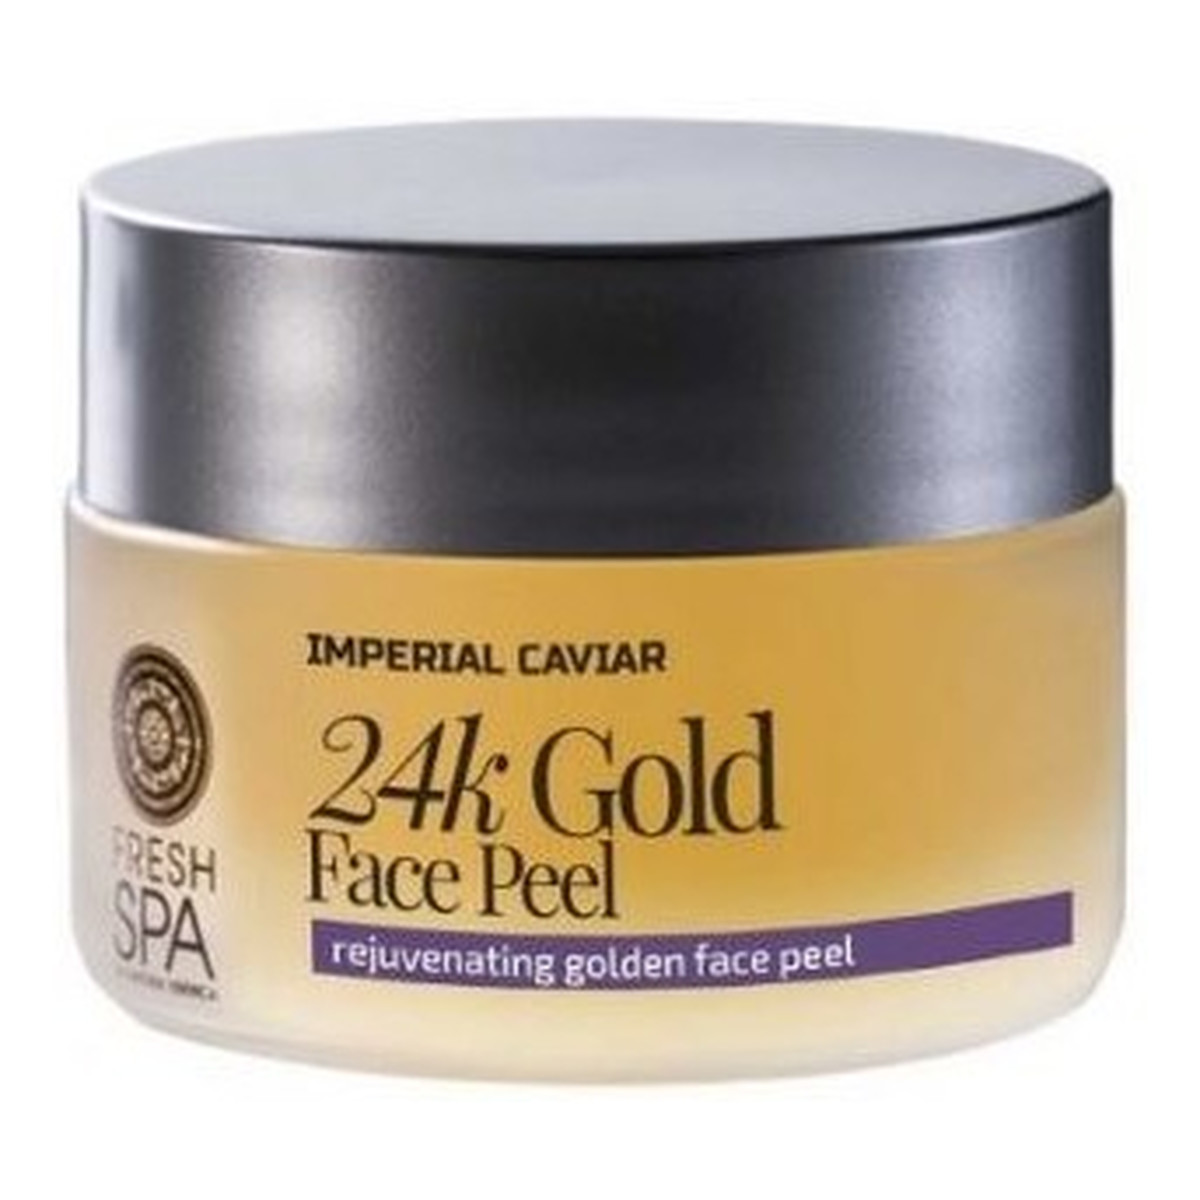 Natura Siberica Fresh Spa 24k Gold Face Peel złoty peeling odmładzający do twarzy 24 karatowe złoto 50ml